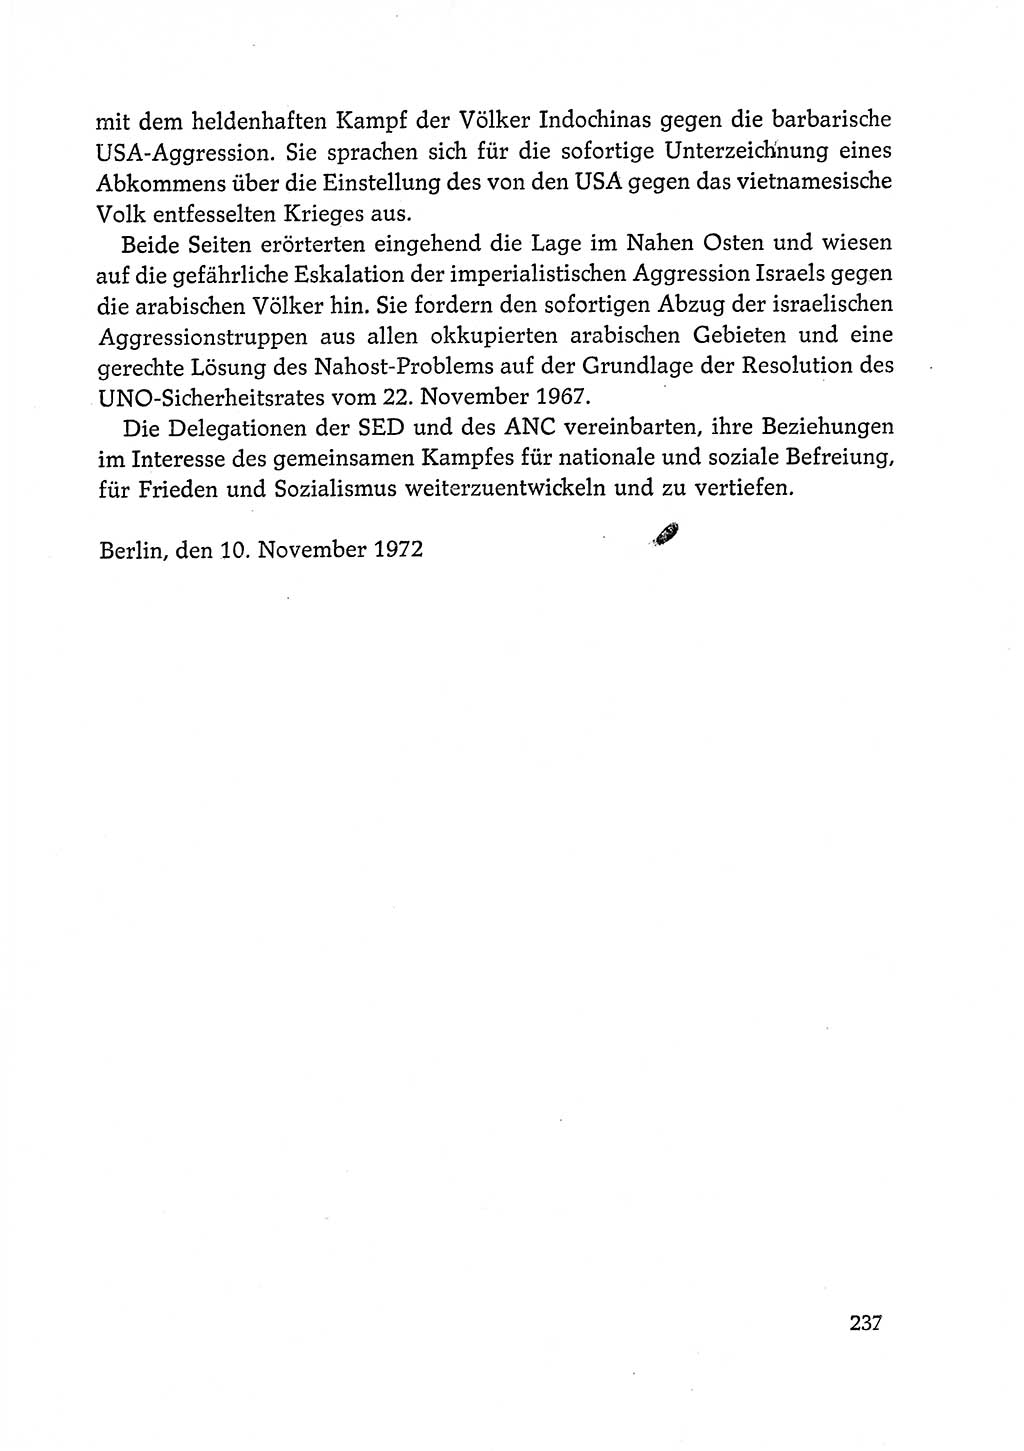 Dokumente der Sozialistischen Einheitspartei Deutschlands (SED) [Deutsche Demokratische Republik (DDR)] 1972-1973, Seite 237 (Dok. SED DDR 1972-1973, S. 237)